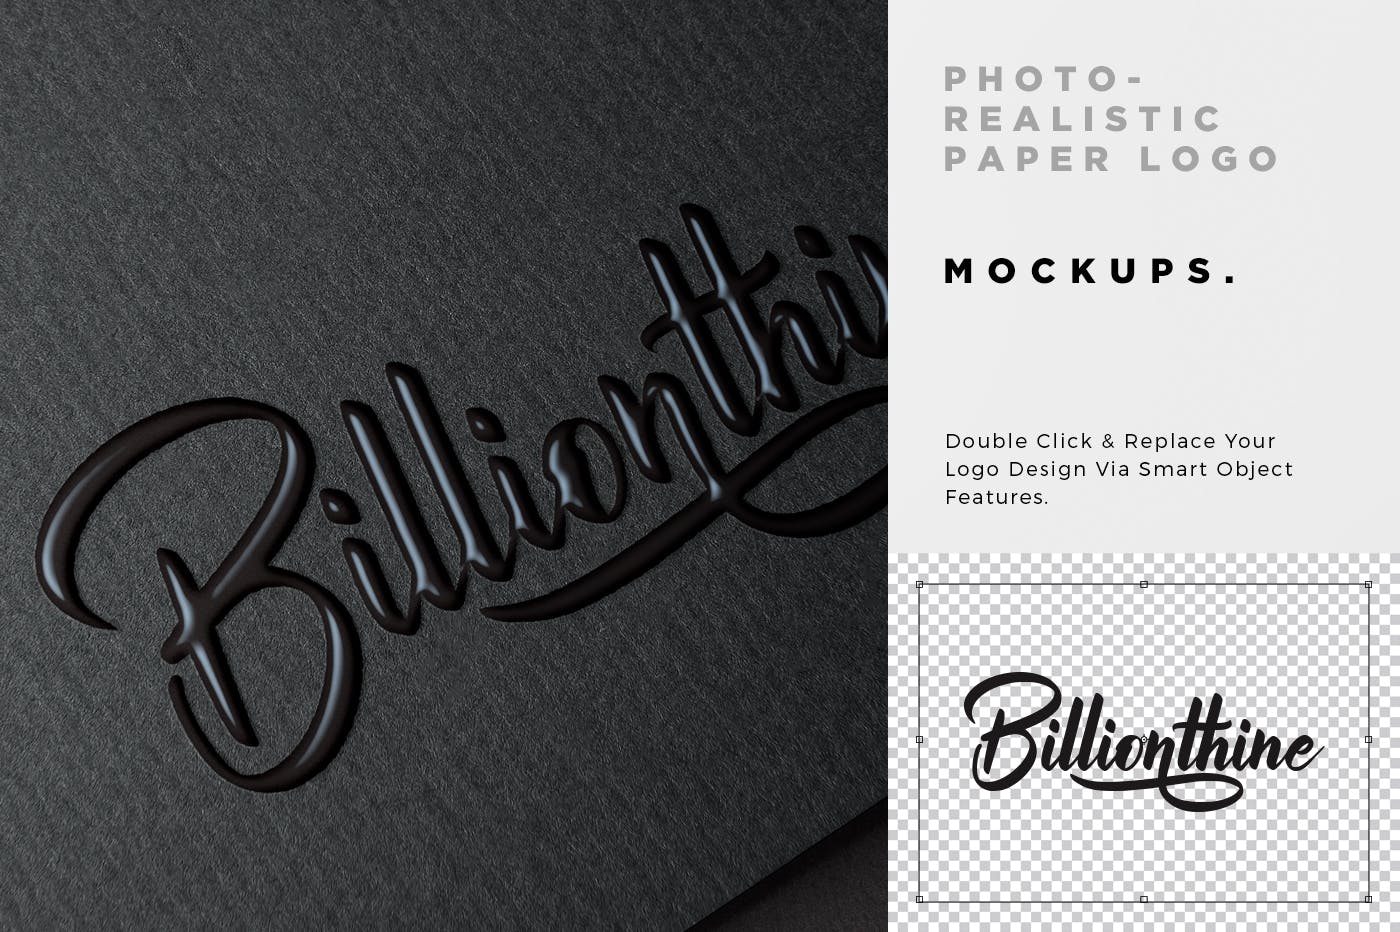 逼真Logo商标印刷效果图样机模板 Photorealistic Paper Logo Mockups插图(4)